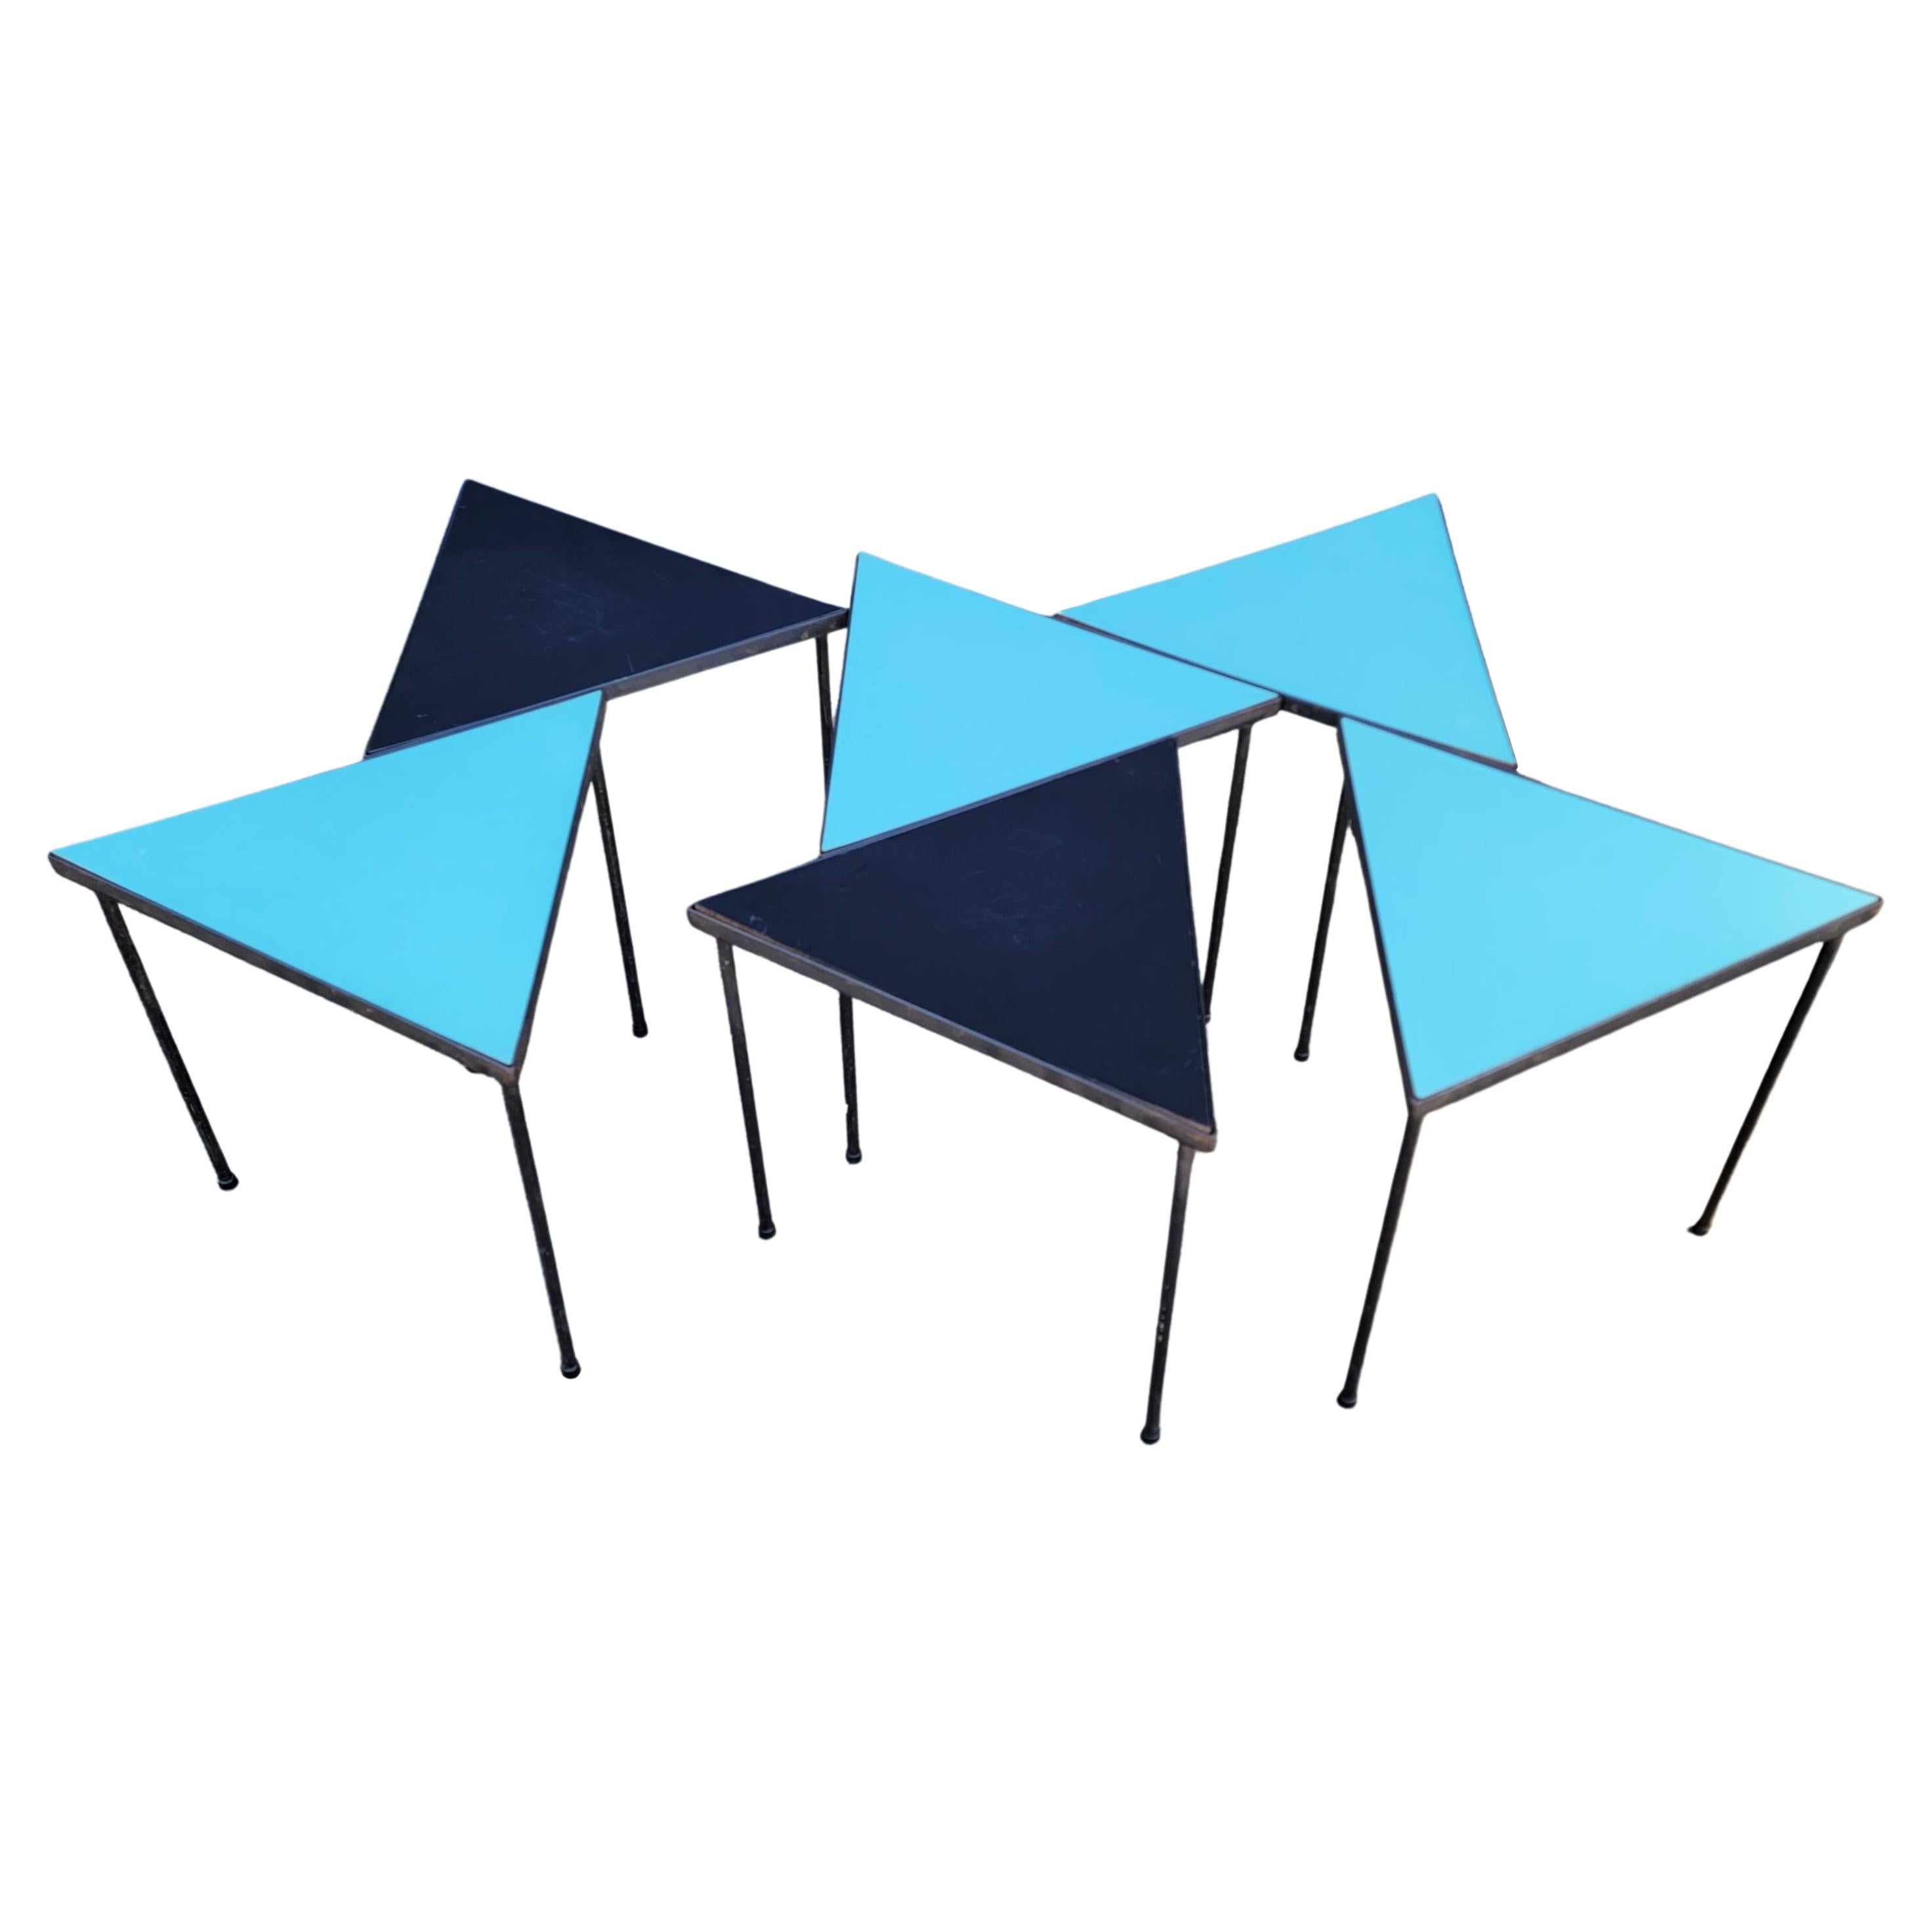 Dreieckige Modul-Eisen-Tische Mid-Century Modern Tische, Beistell- oder Beistelltische